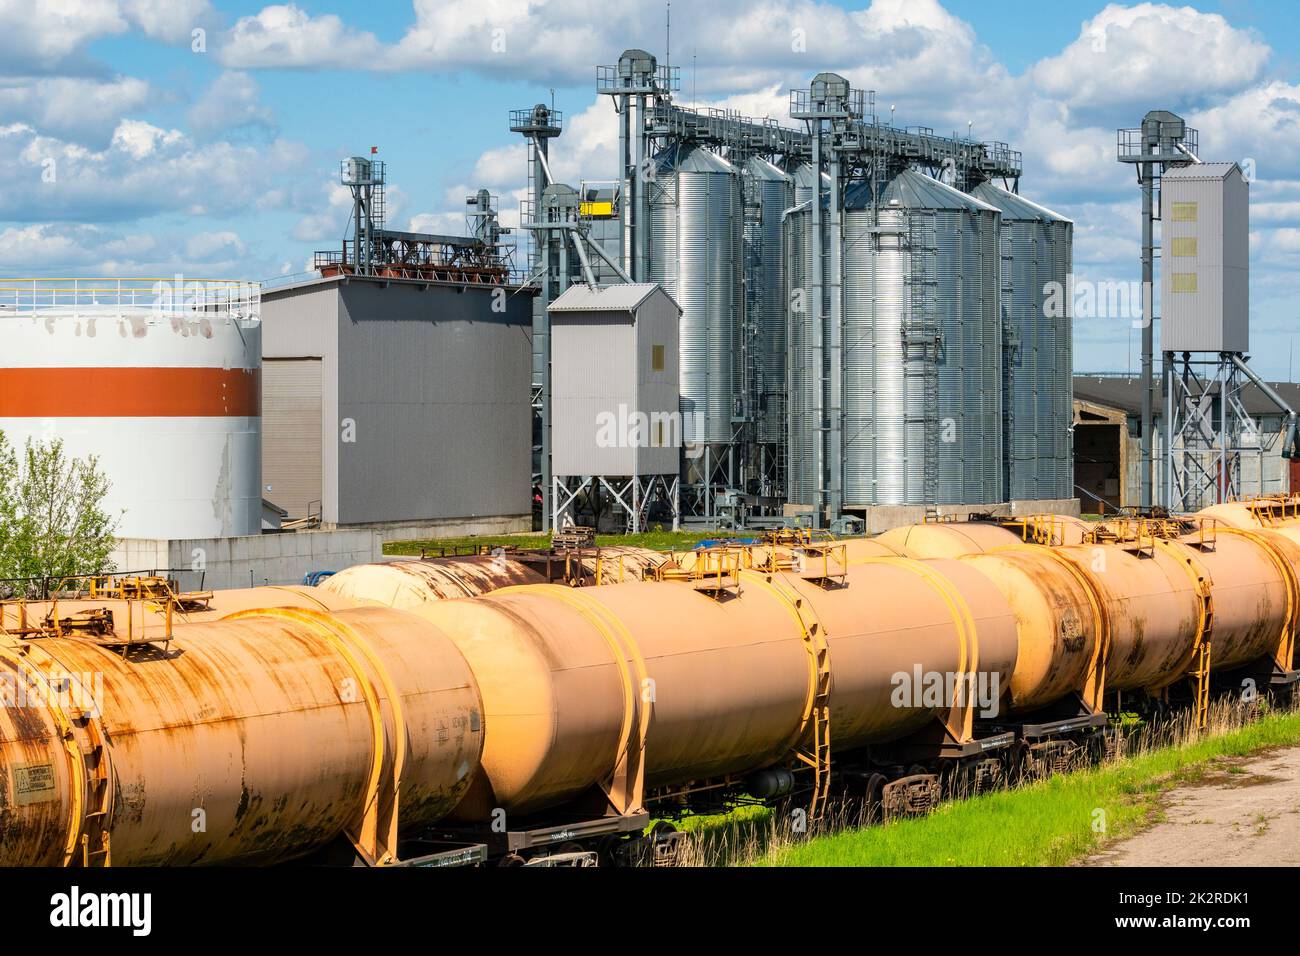 Grain silo next to railroad tracks with set of cargo tanks Stock Photo